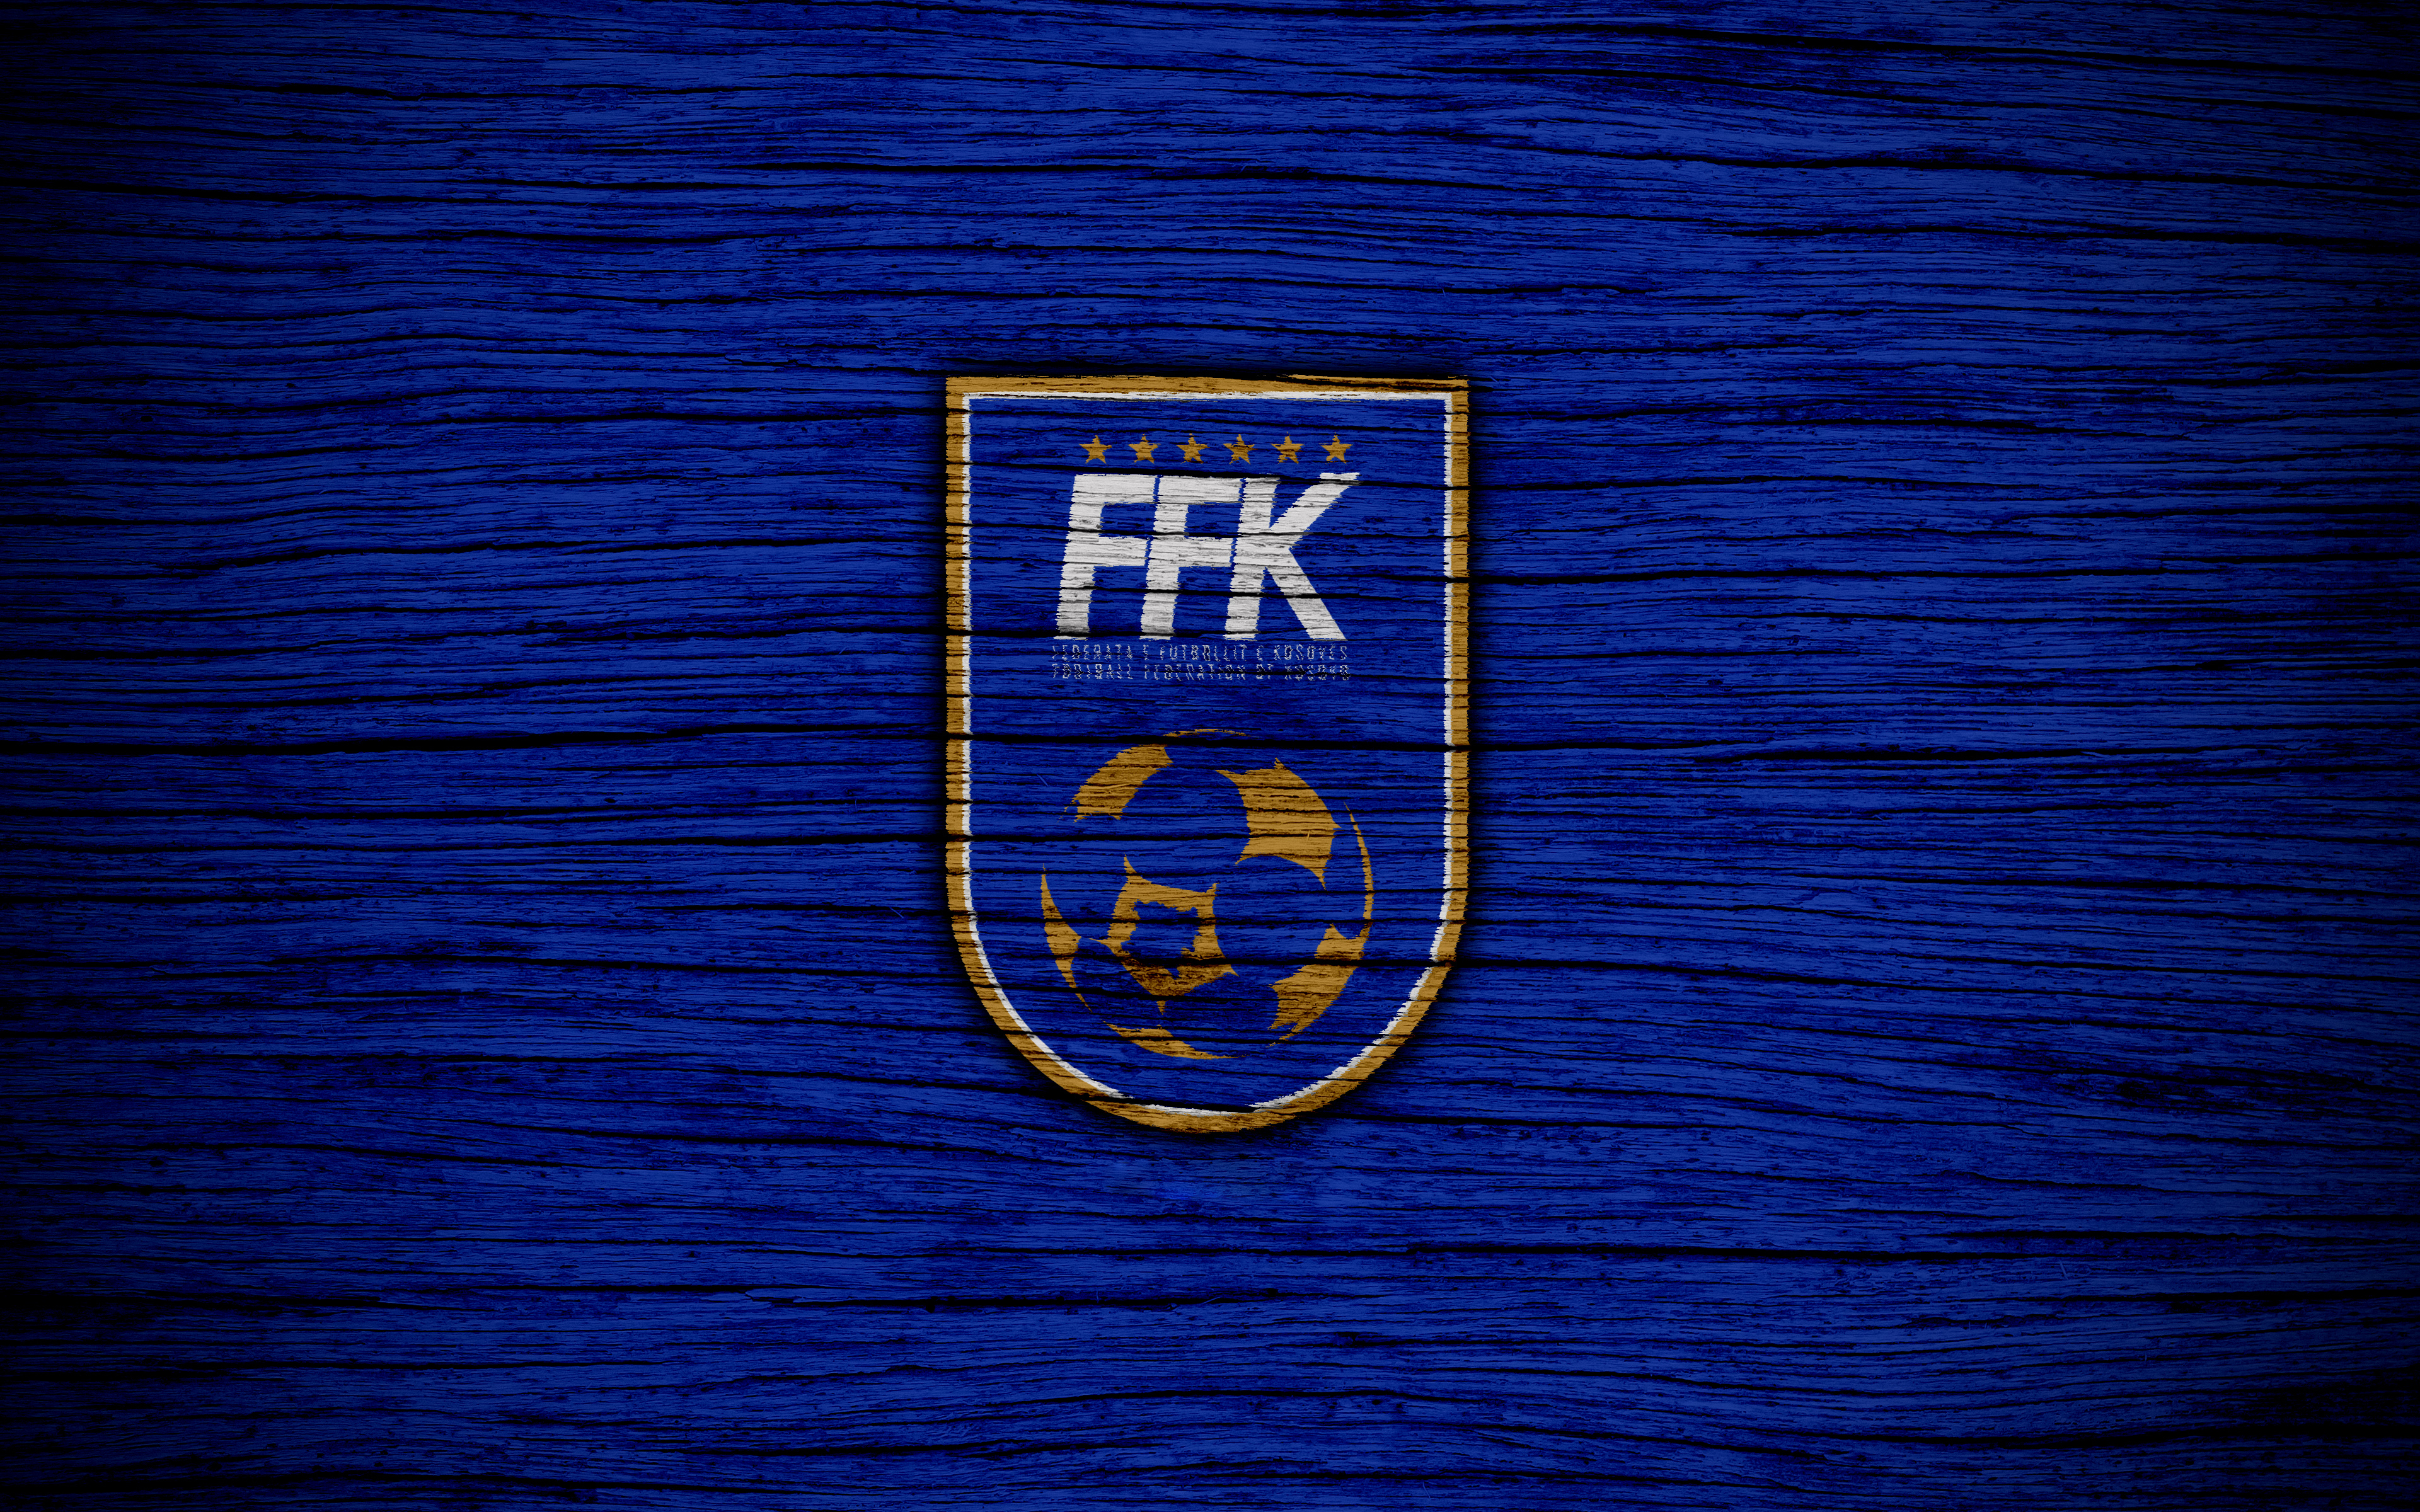 Скачать обои Сборная Косово По Футболу на телефон бесплатно